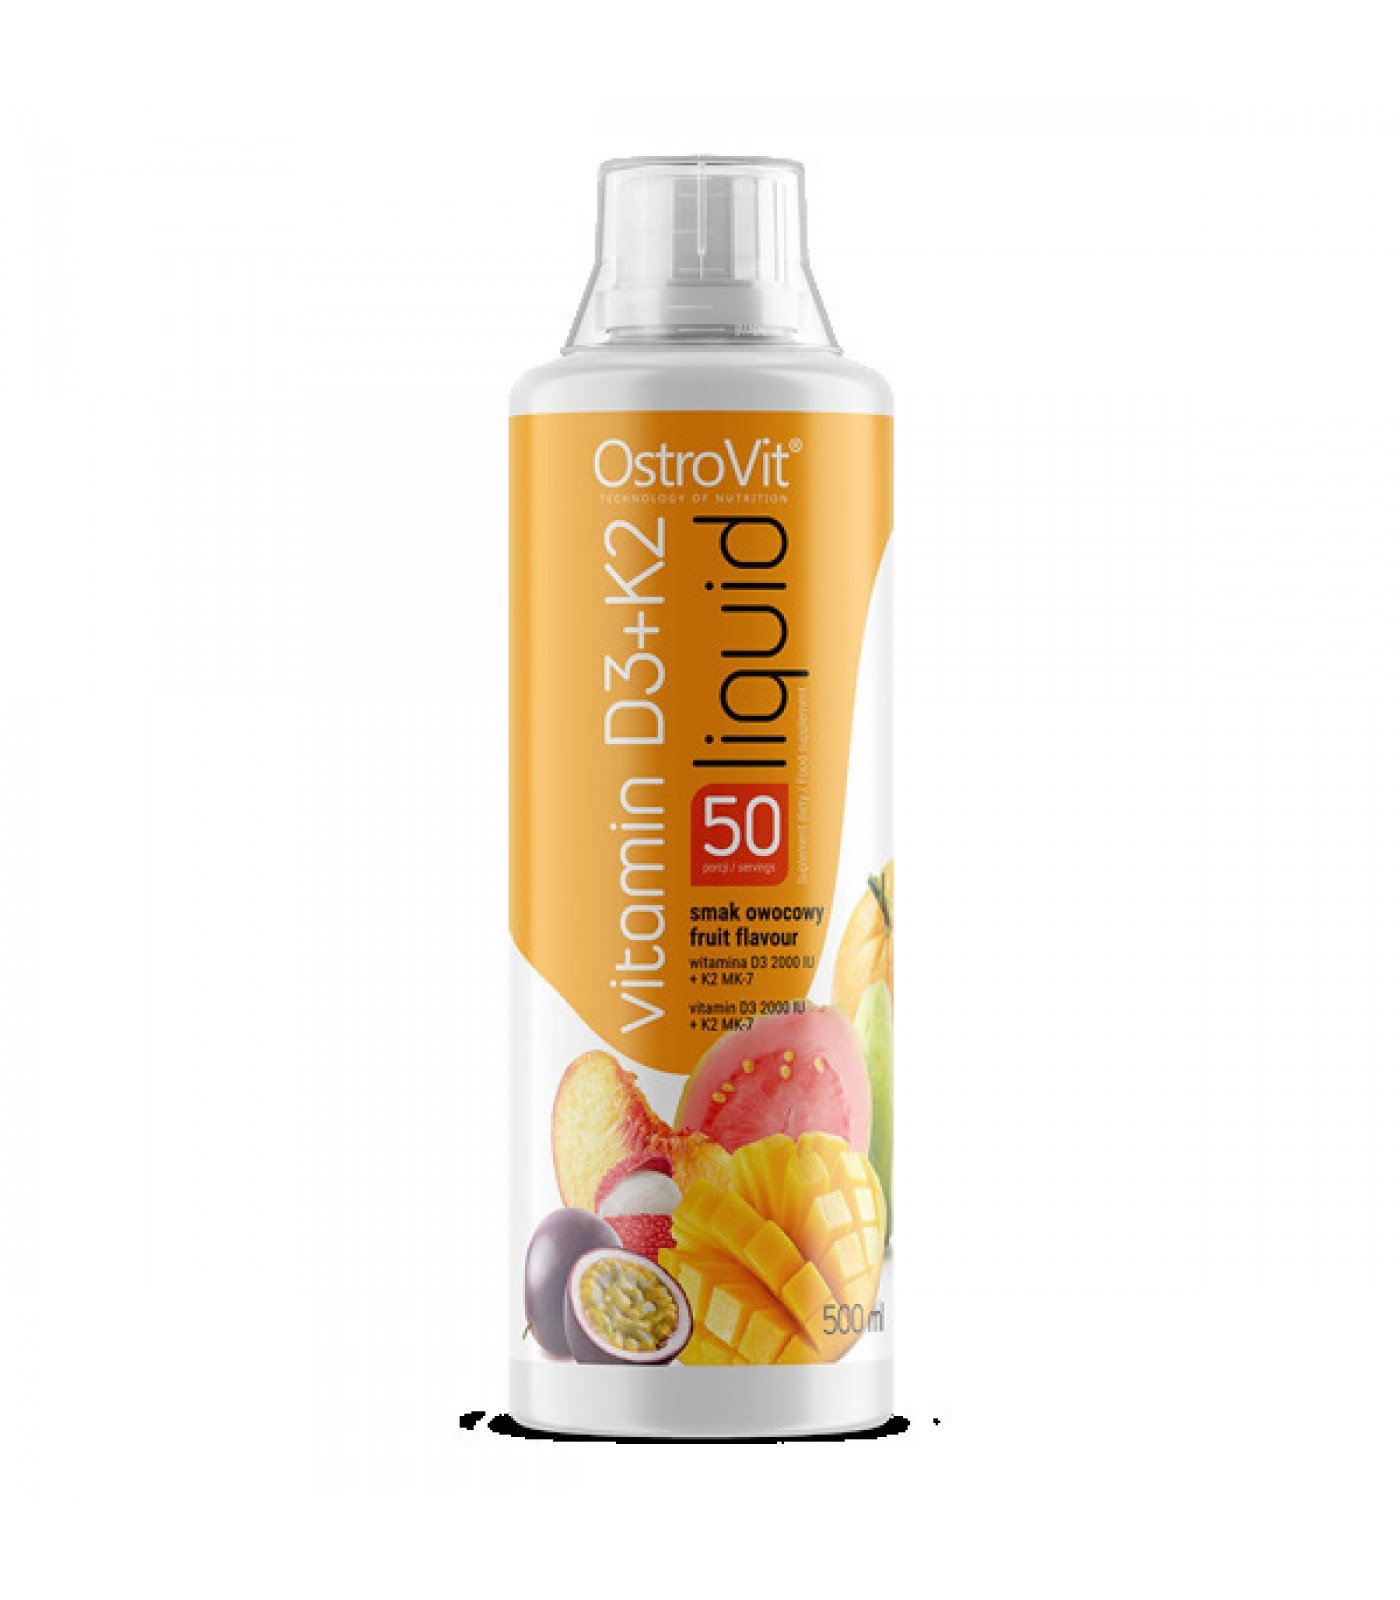 OstroVit - Vitamin D3 + K2 Liquid / 500ml.